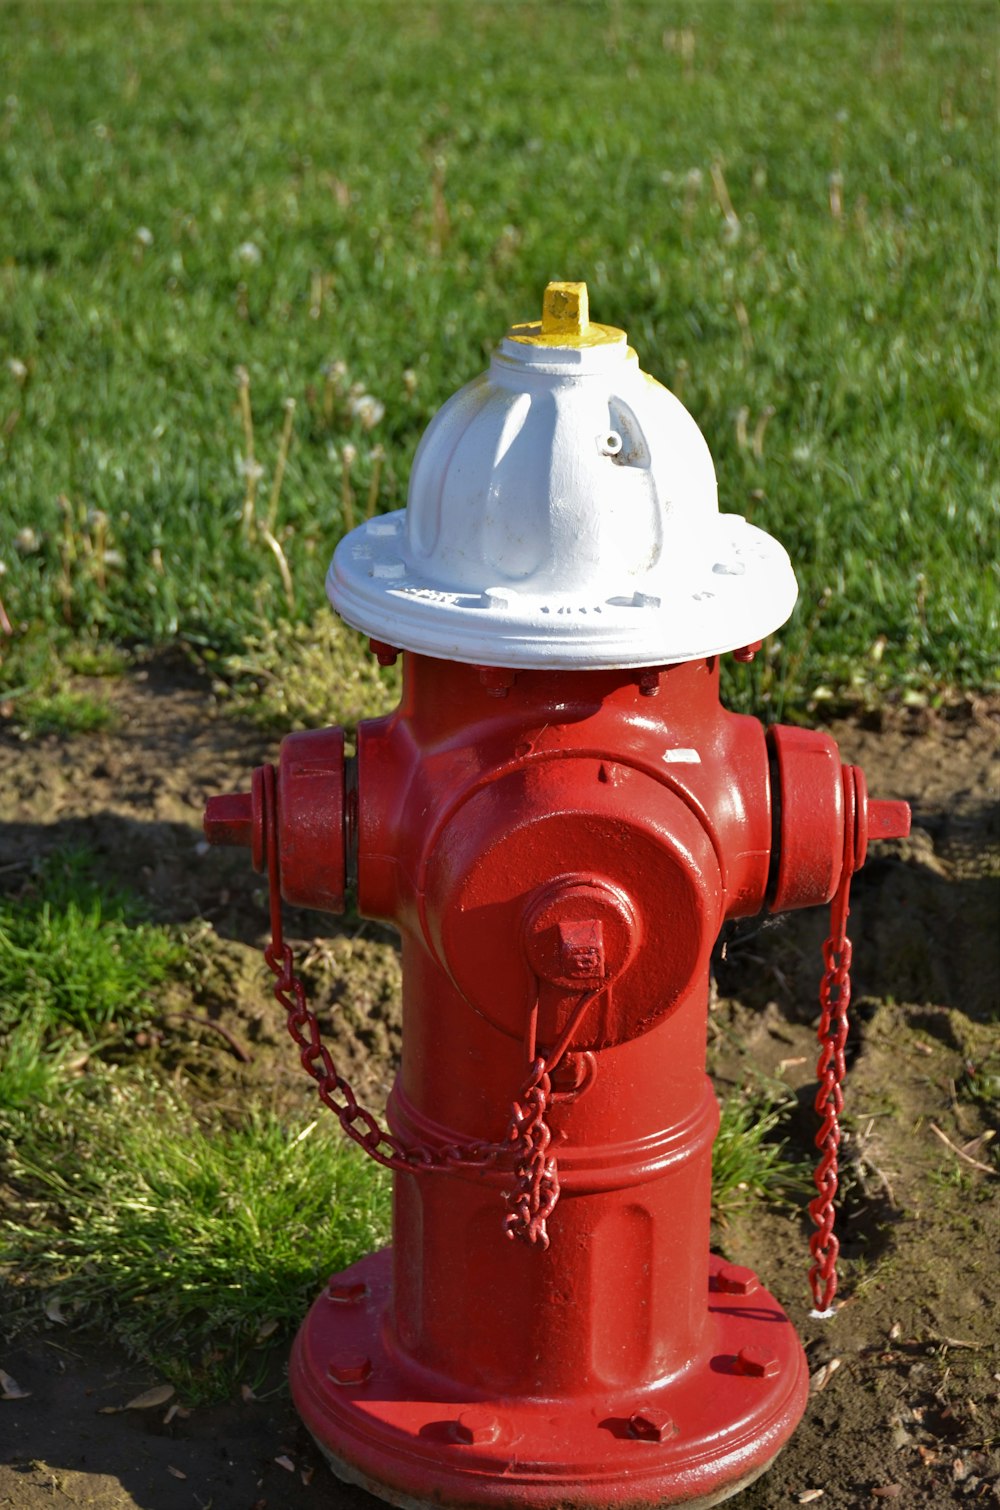 昼間の緑の芝生の上の赤い消火栓